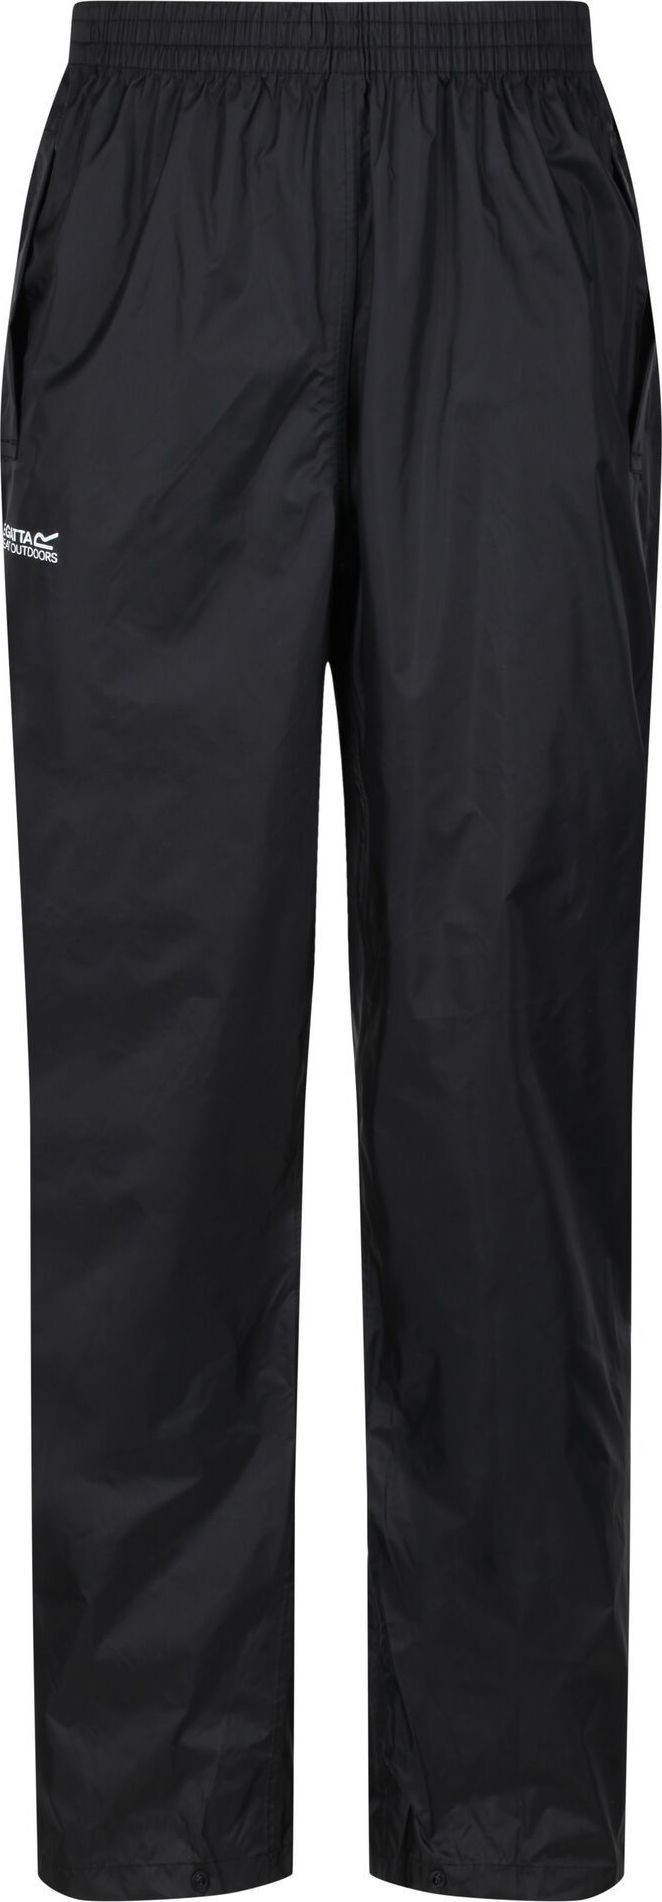 Pánské outdoorové kalhoty Pack It Černé model 18670021 Barva: Černá, Velikost: XXL model 18670021 - Regatta